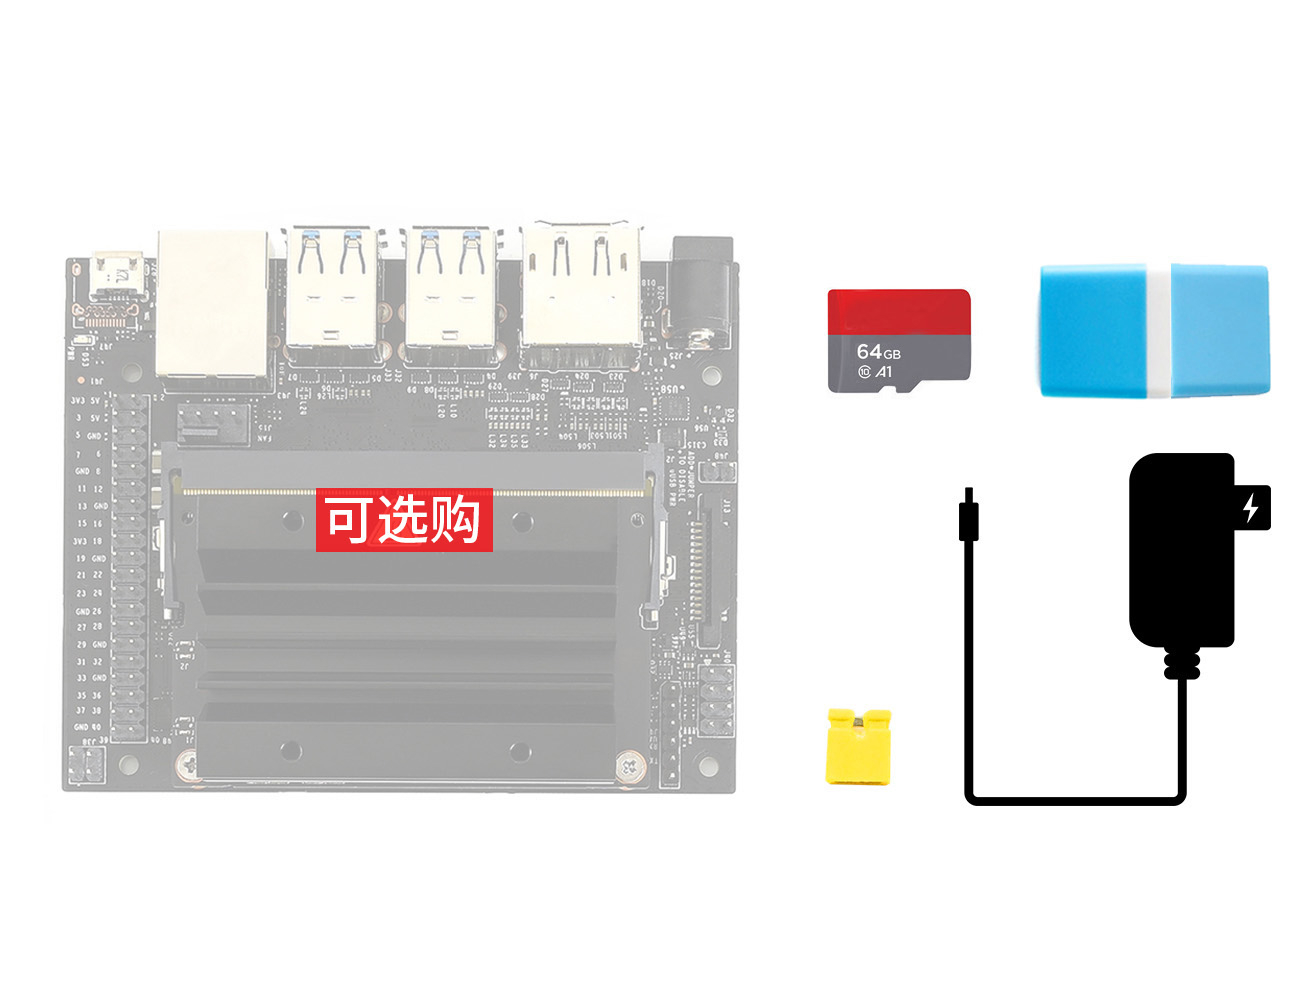 英伟达Jetson Nano AI人工智能开发板配件包A 含64G SD卡 电源等